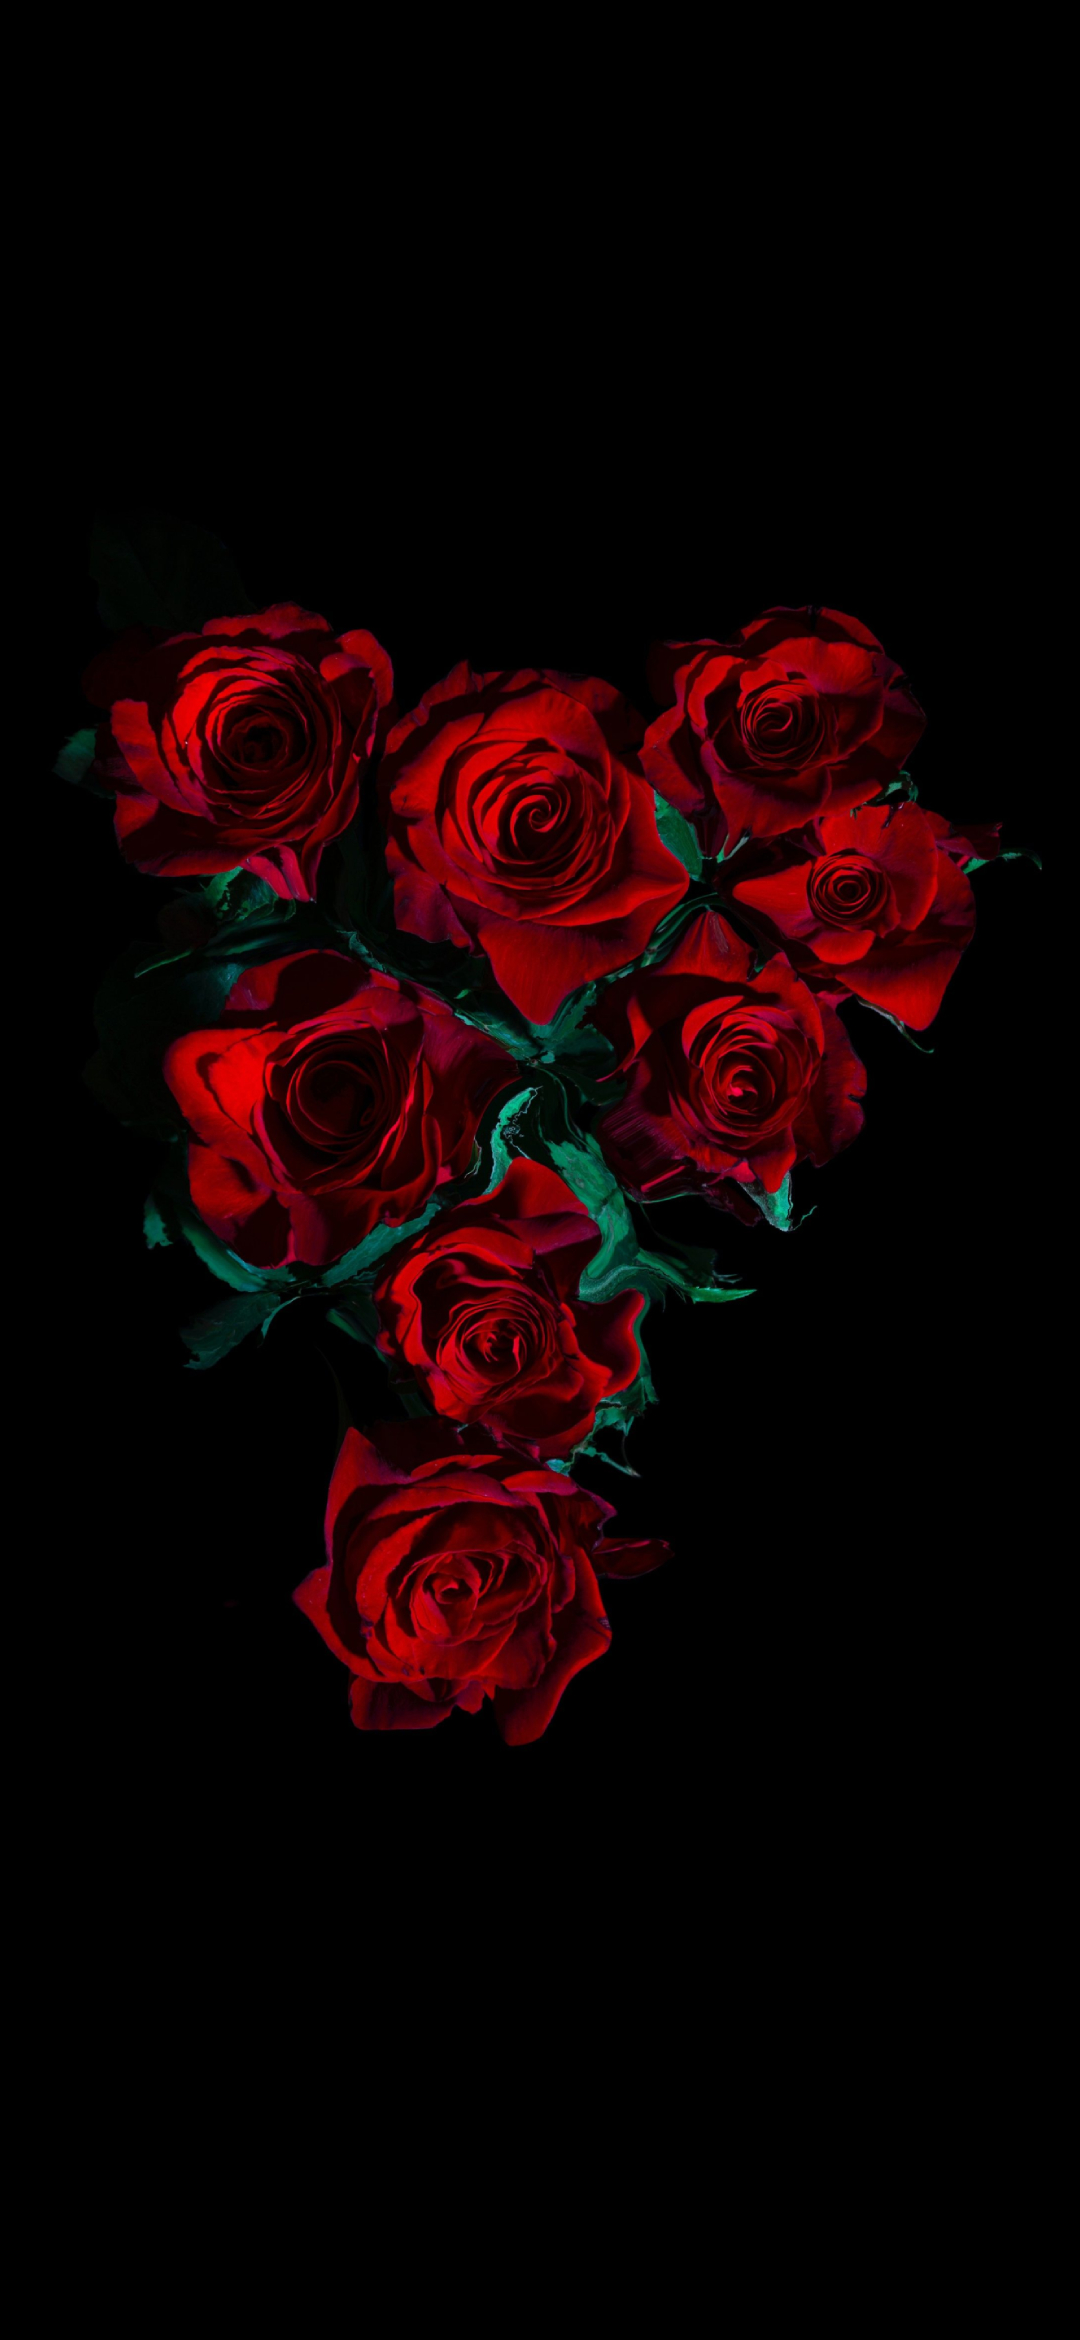 綺麗な薔薇の花 高画質 Aquos Zero2 壁紙 待ち受け スマラン